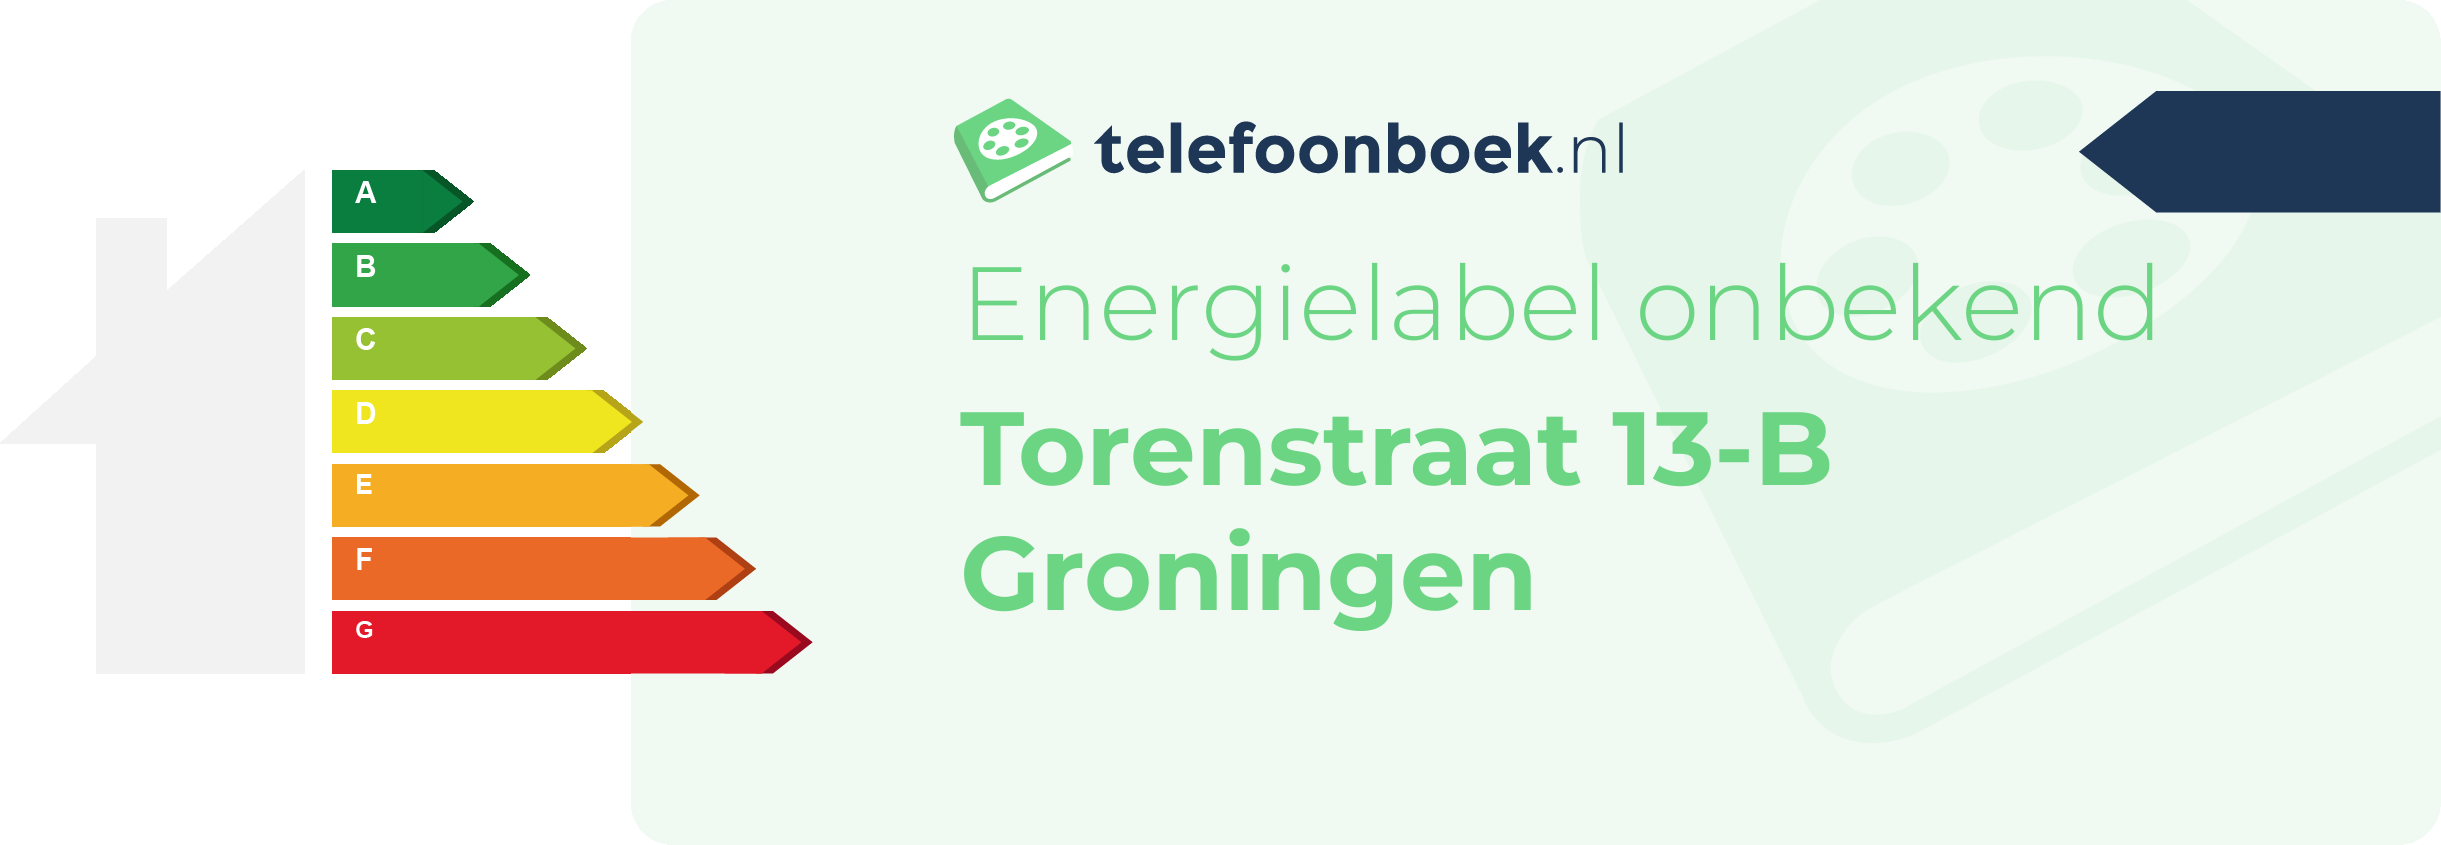 Energielabel Torenstraat 13-B Groningen